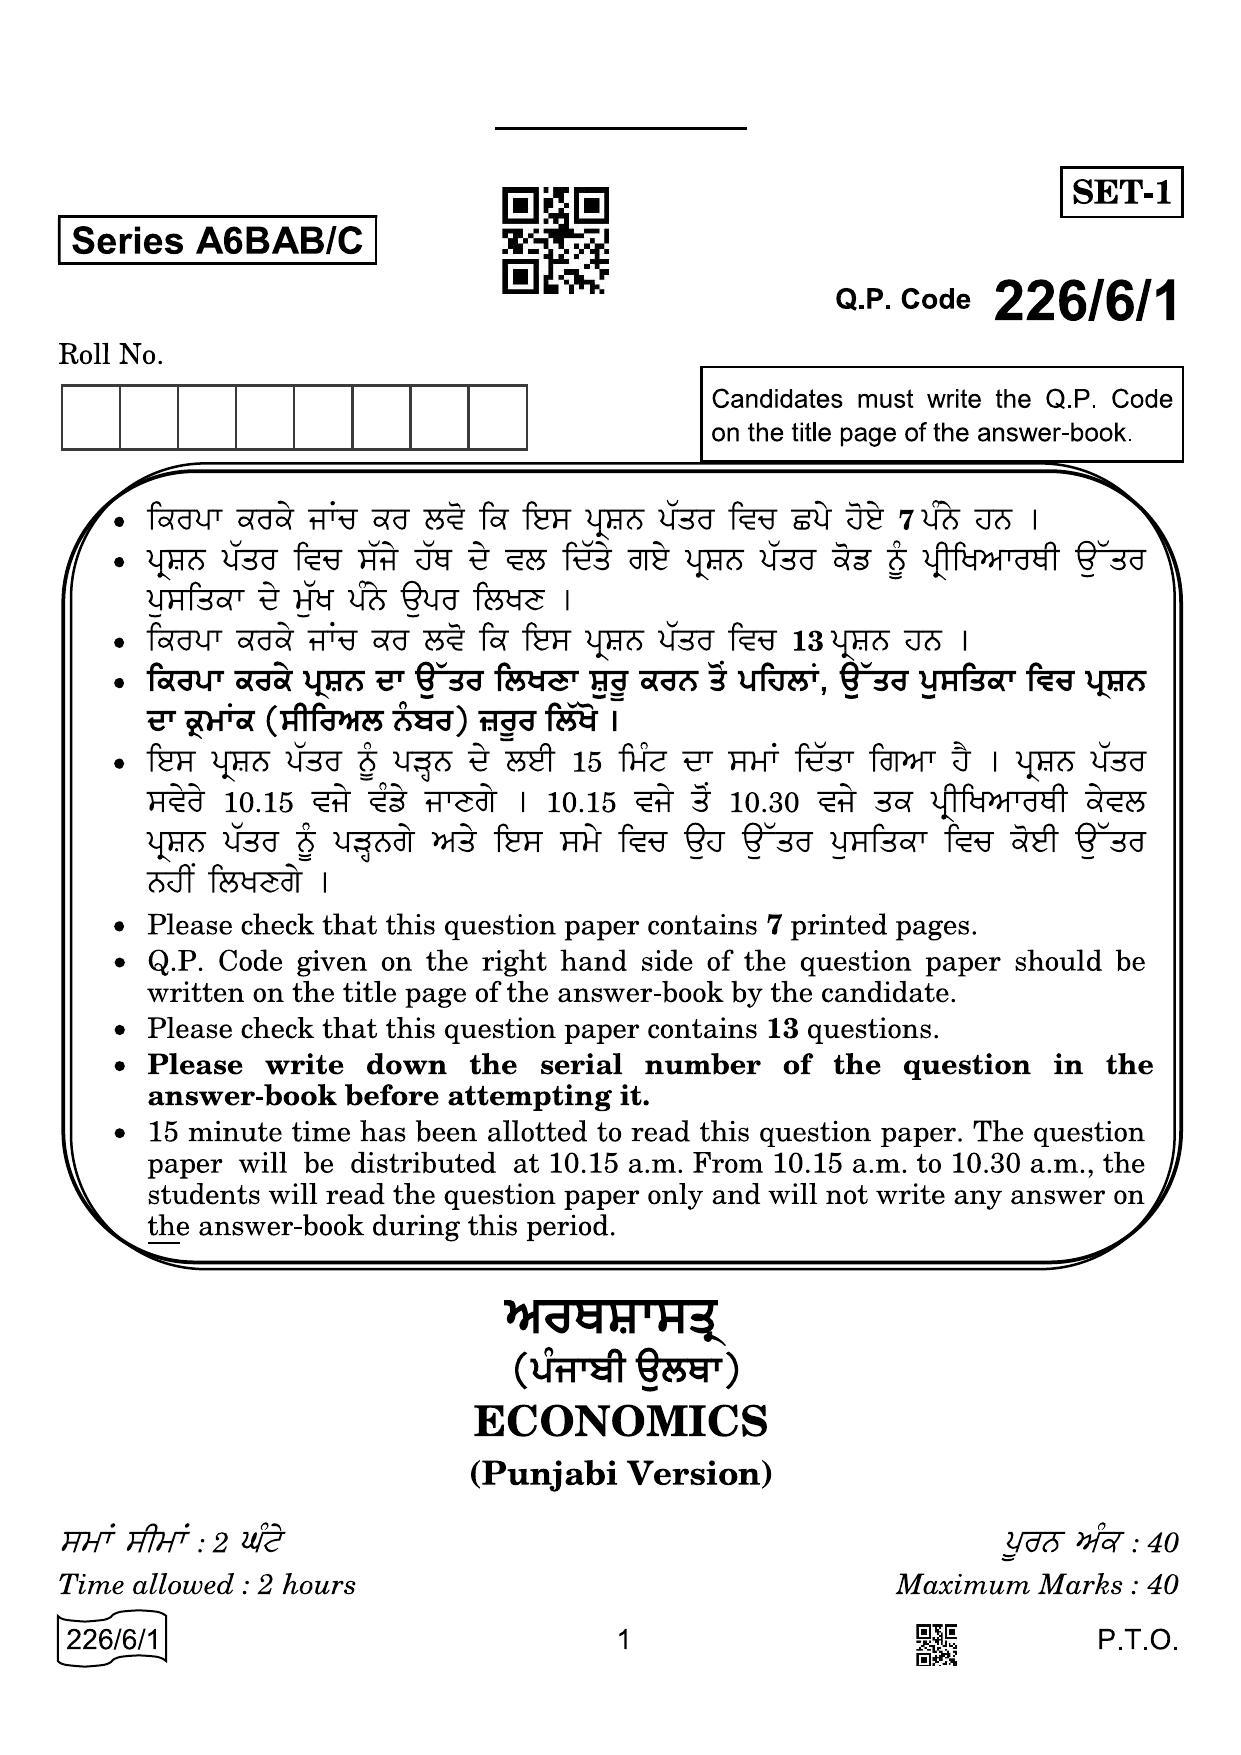 CBSE Class 12 226-6-1 Economics Punjabi 2022 Compartment Question Paper - Page 1